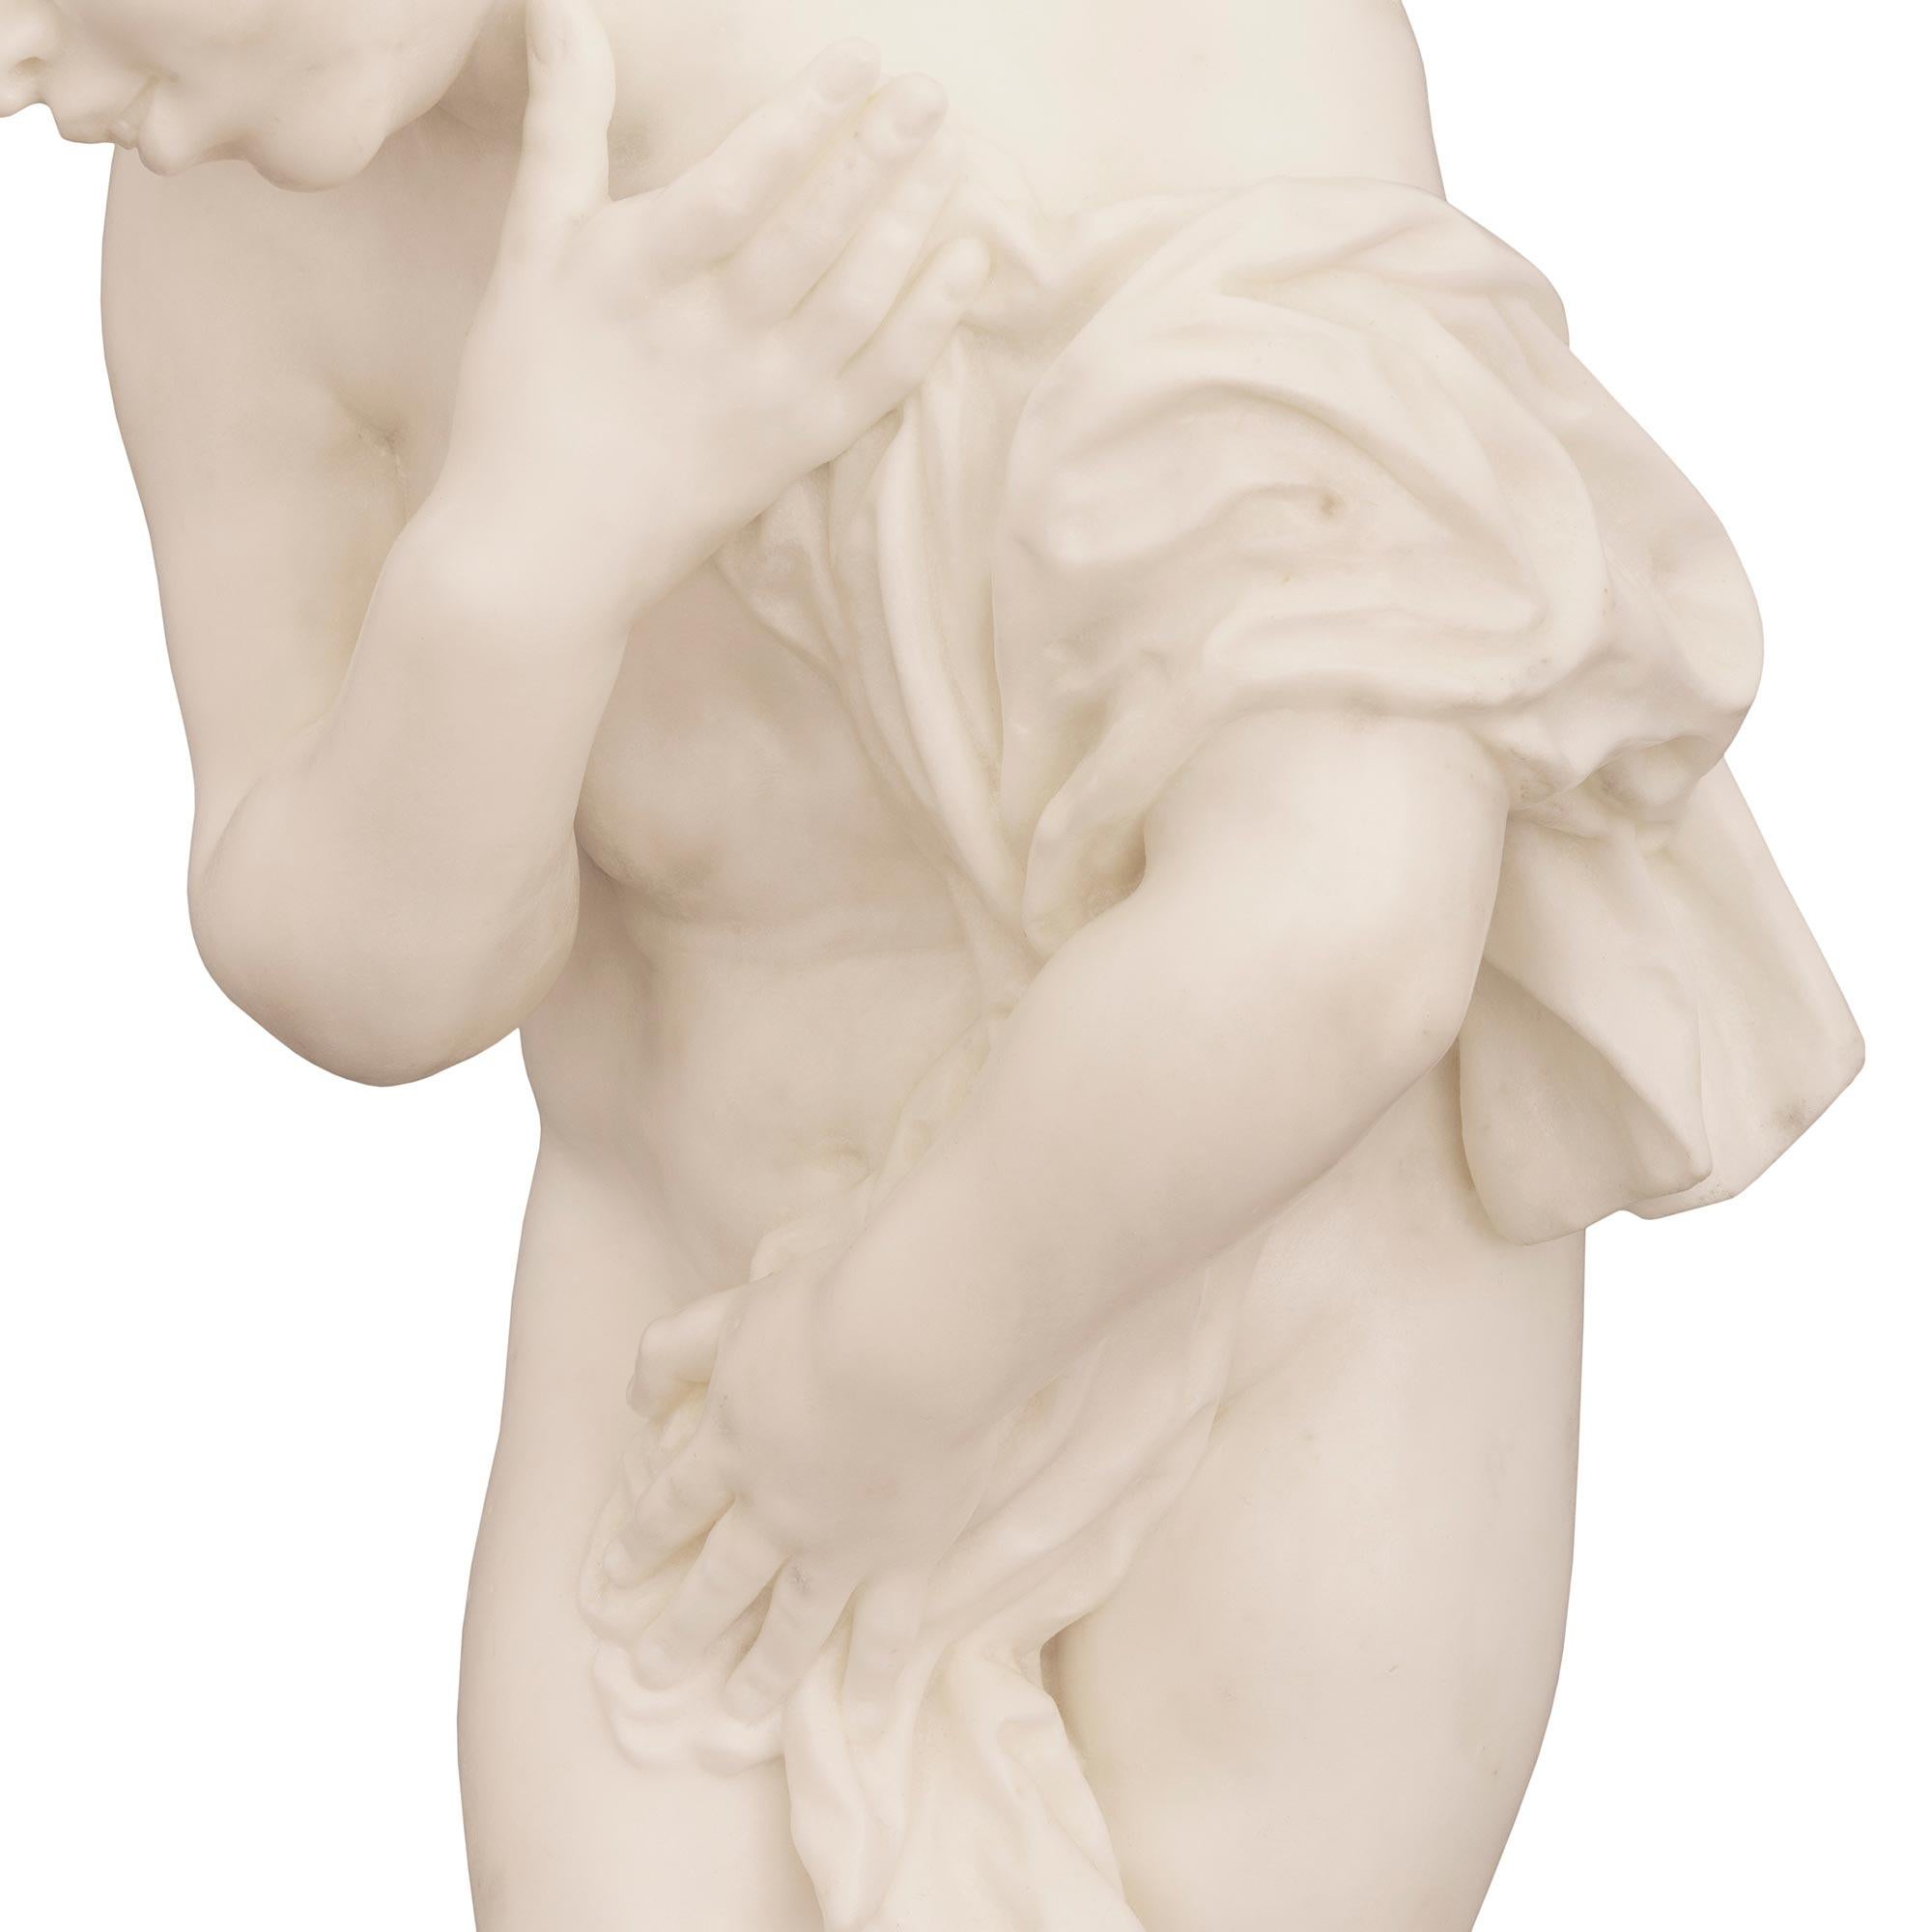 Italian 19th Century White Carrara Marble Statue Signed F. Mariotti Scul For Sale 4